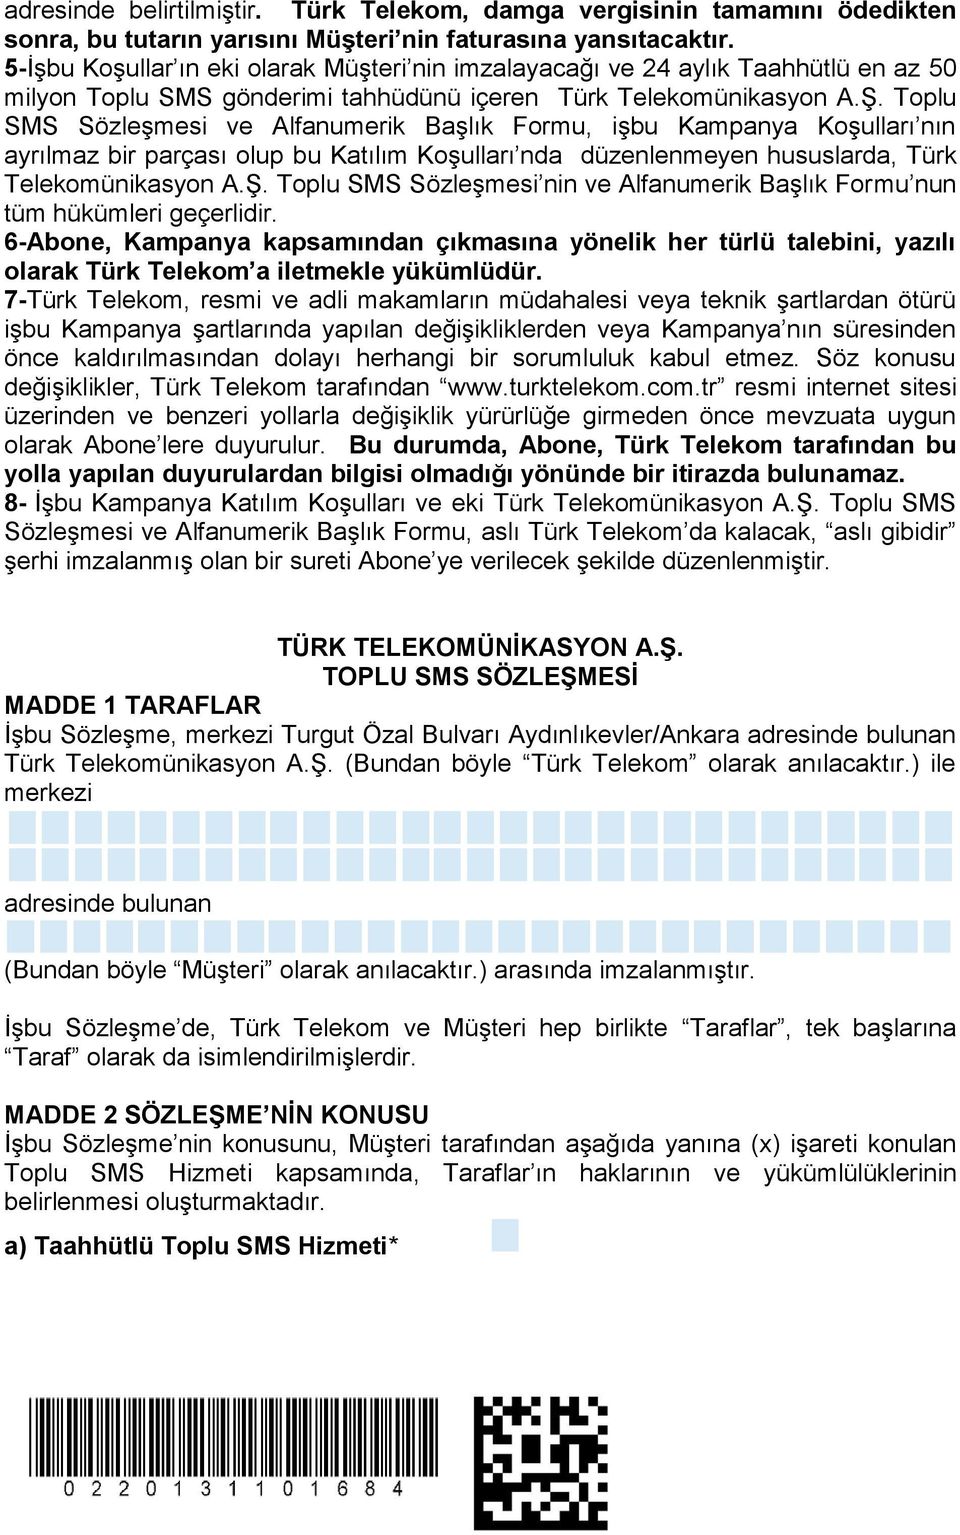 Toplu SMS Sözleşmesi ve Alfanumerik Başlık Formu, işbu Kampanya Koşulları nın ayrılmaz bir parçası olup bu Katılım Koşulları nda düzenlenmeyen hususlarda, Türk Telekomünikasyon A.Ş.